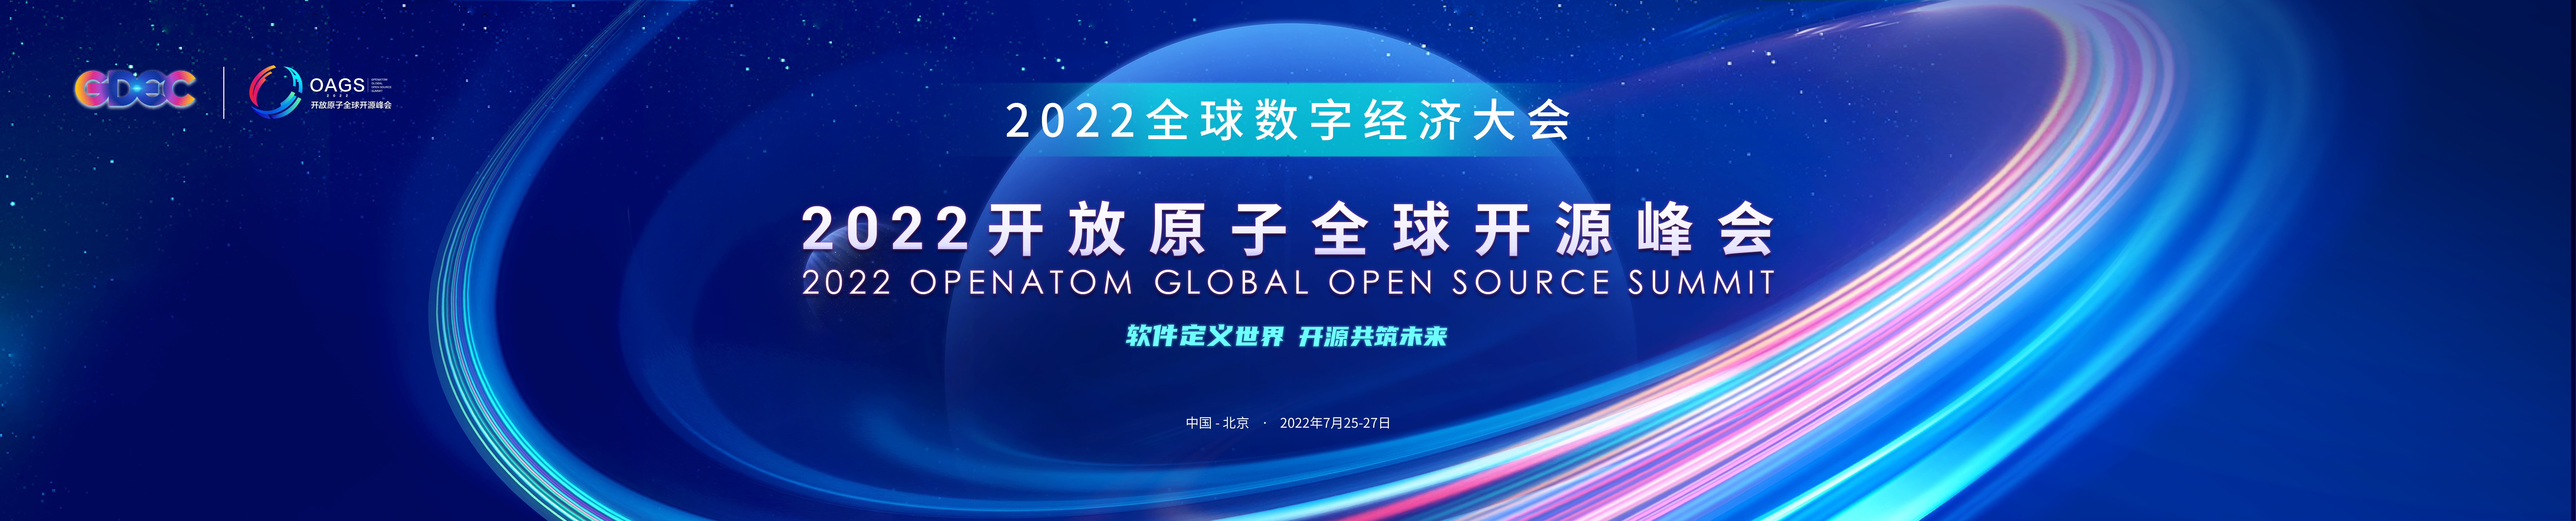 2022 开放原子全球开源峰会开源工业软件论坛即将开幕-鸿蒙开发者社区